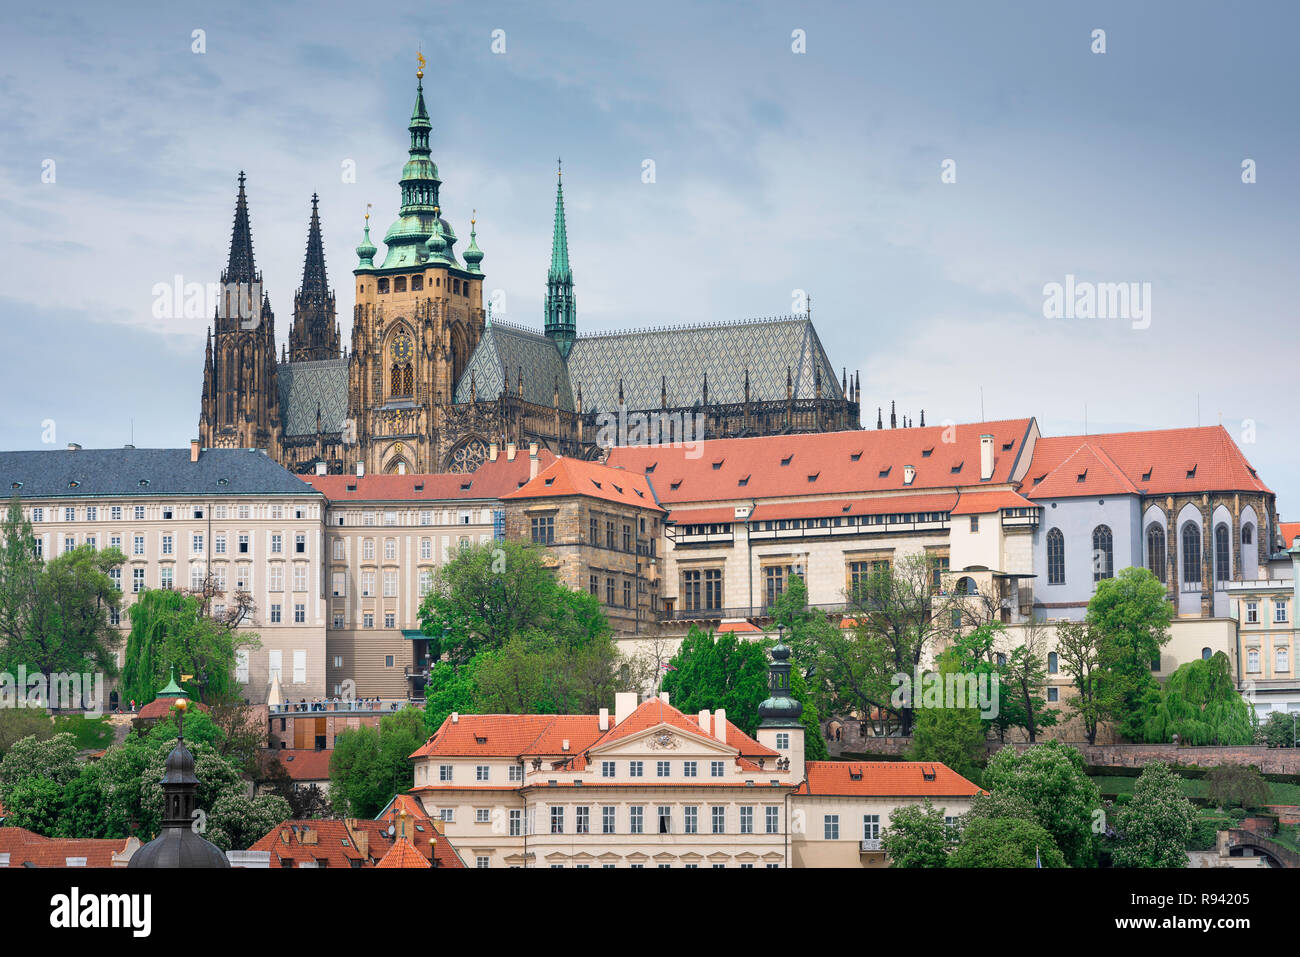 Die Prager Burg Kathedrale, Sicht auf die hradcany Bezirk mit der Prager Burg Gebäude und das Dach und die Türme von St. Vitus Kathedrale auf die Skyline. Stockfoto